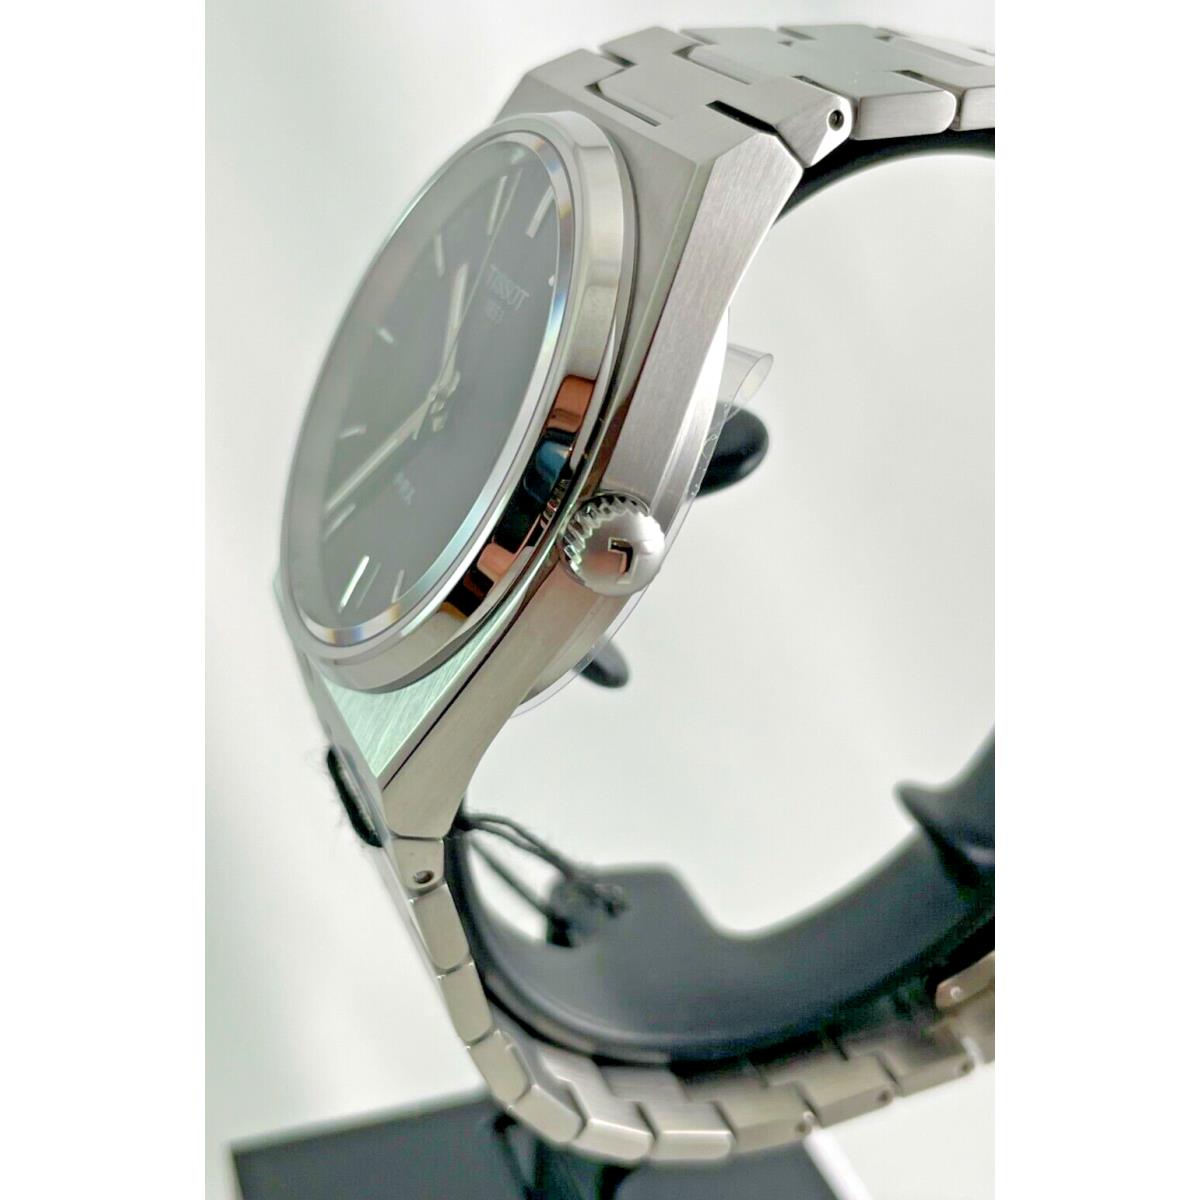 Tissot watch PRX - Dial: Black, Band: Silver, Bezel: Silver